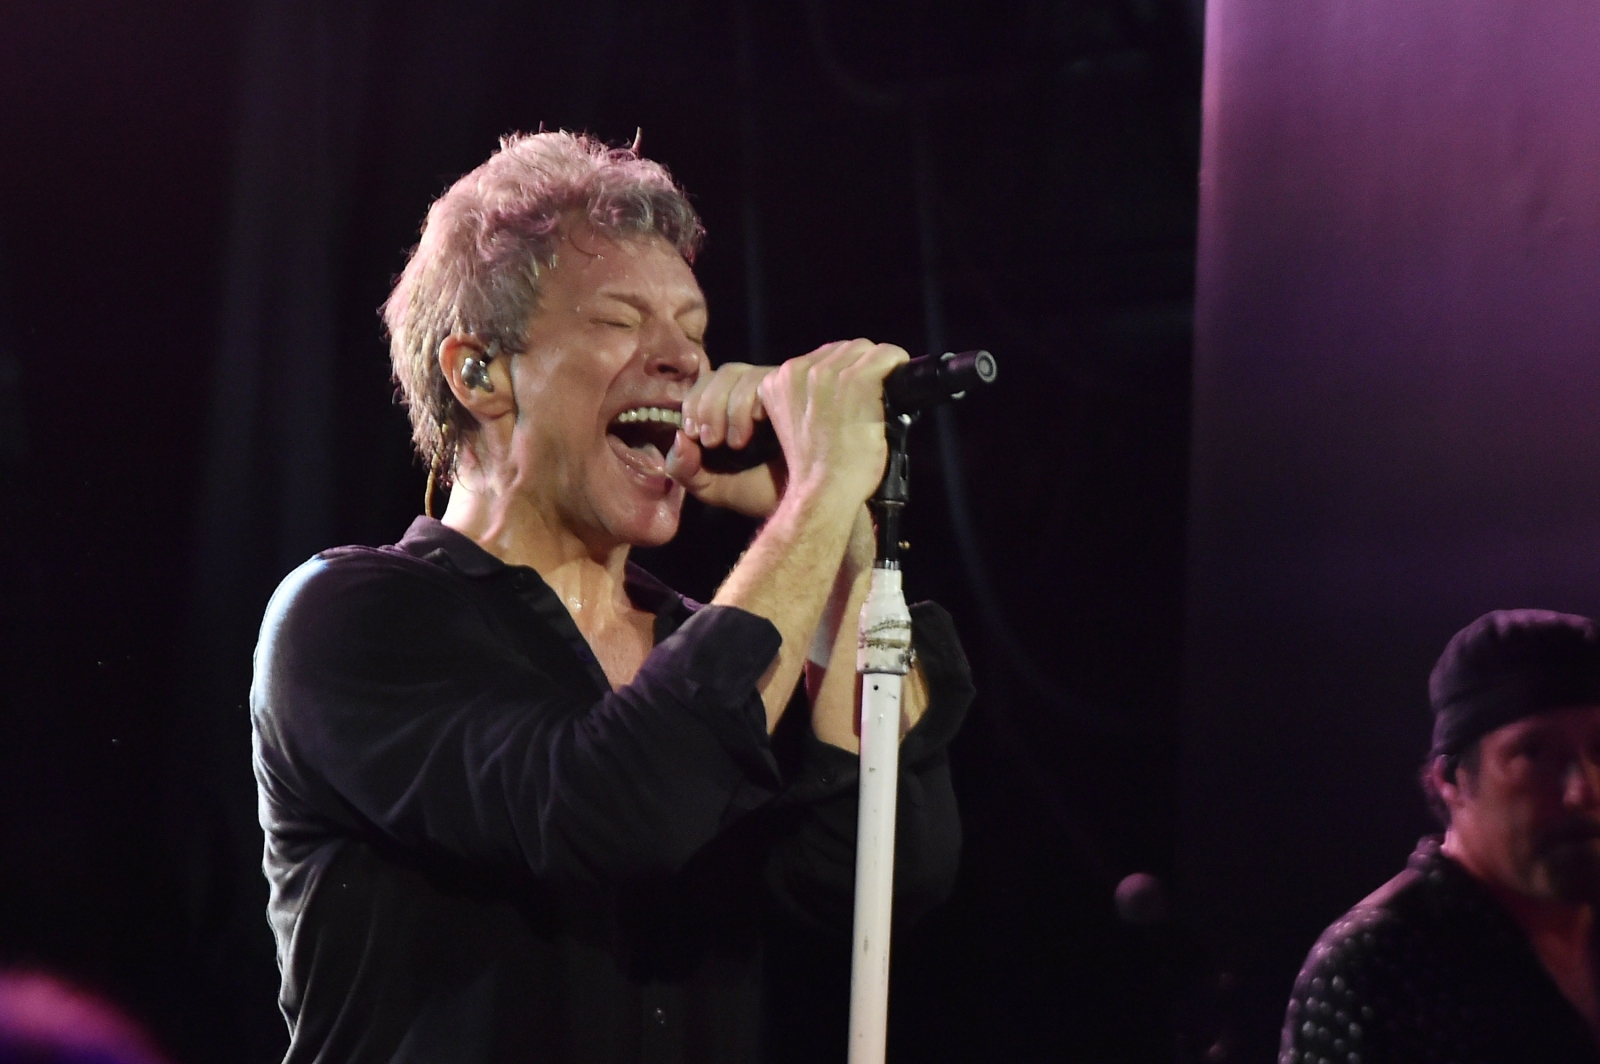 Is Jon Bon Jovi Sick? Health Rumors and Career Impact